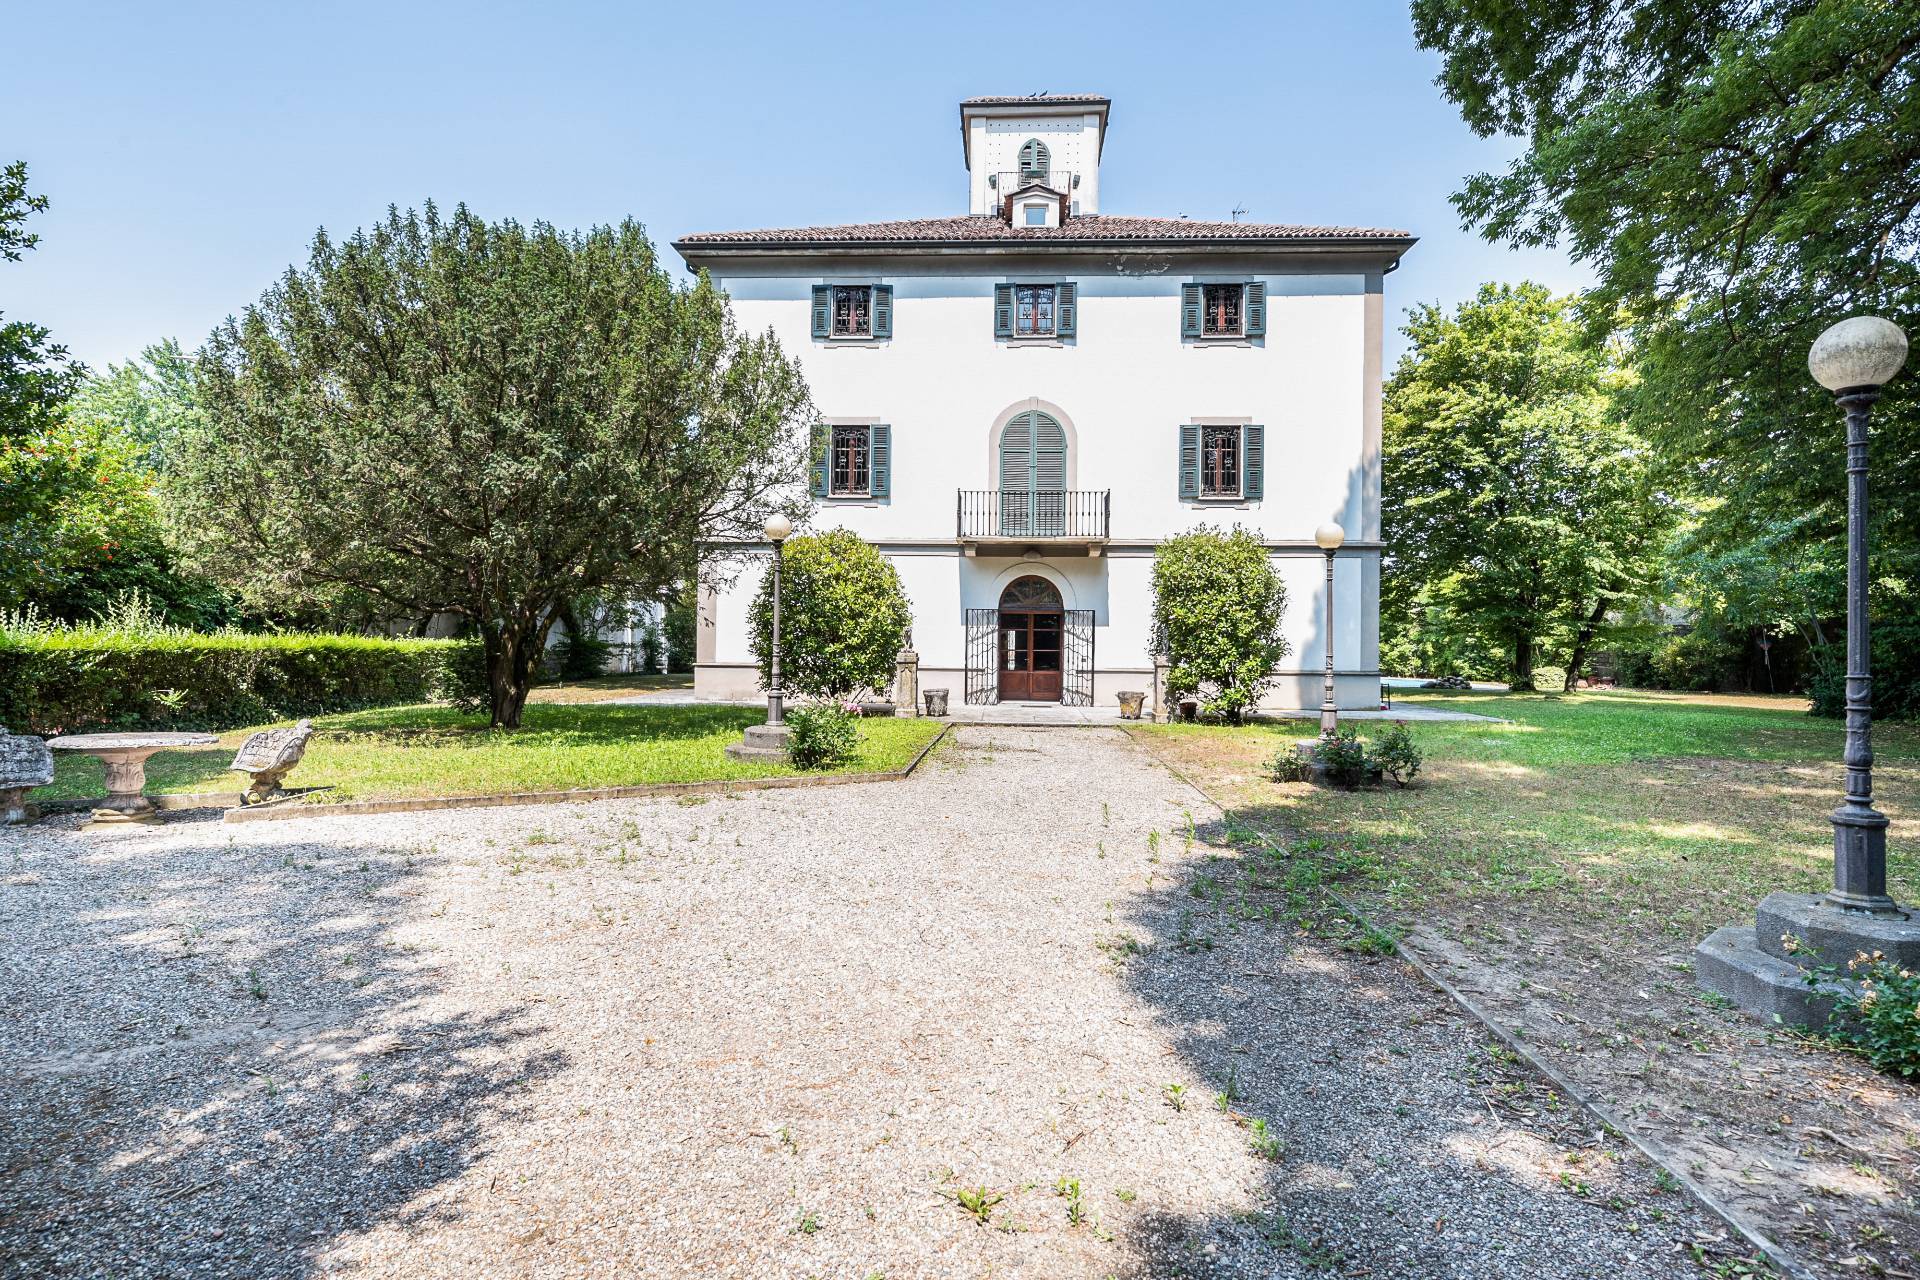 Villa in Vendita a Vigevano: 5 locali, 1000 mq - Foto 1